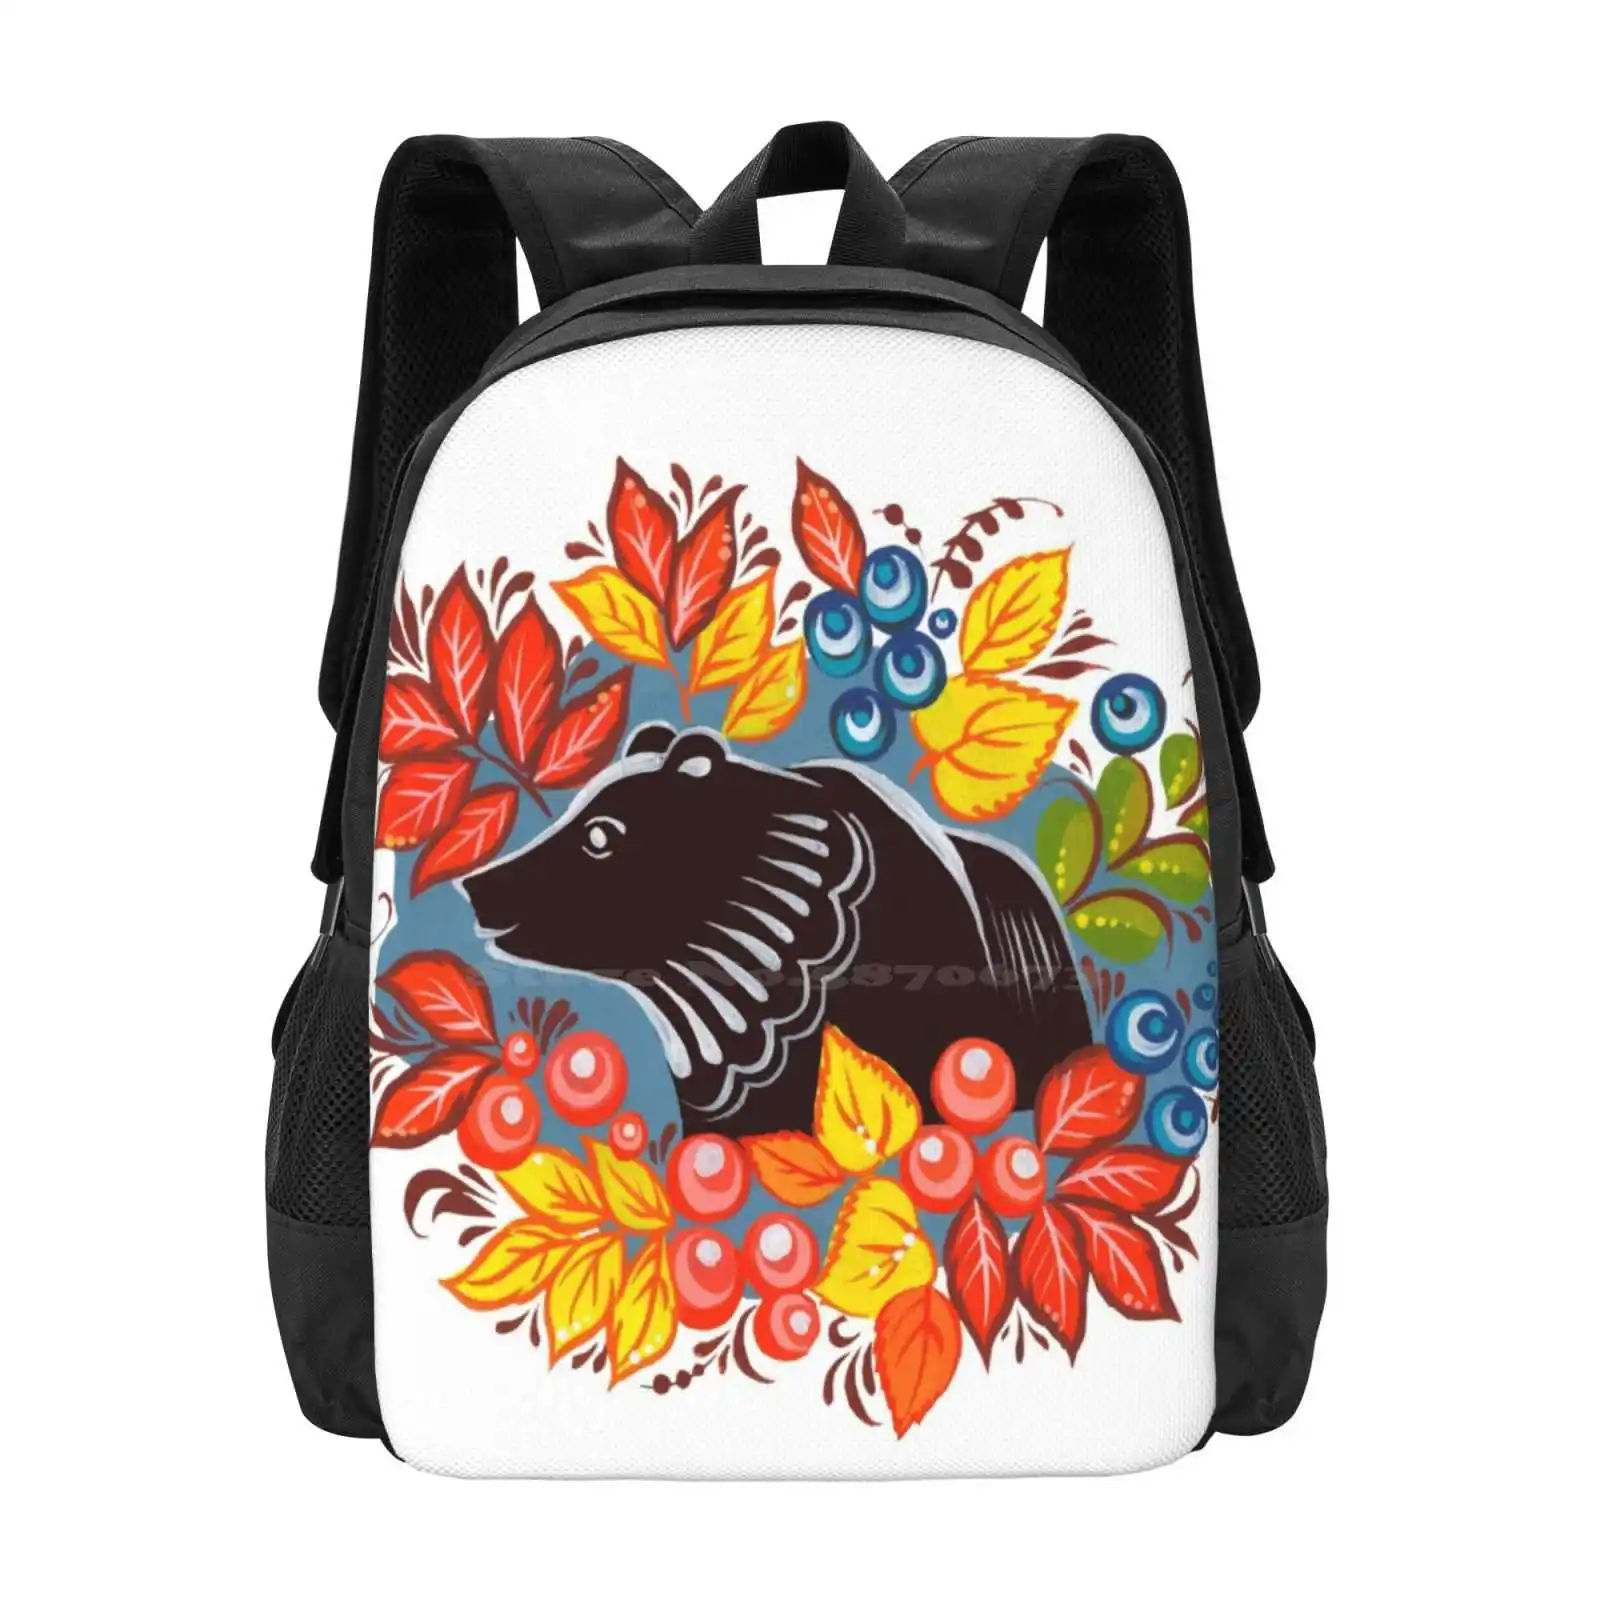 Ayı Sonbahar Orman öğrenci için sırt çantası Okul Dizüstü Seyahat Çantası Ayı Sonbahar Yaprakları Meyveleri Süs Sevimli Kırmızı Turuncu